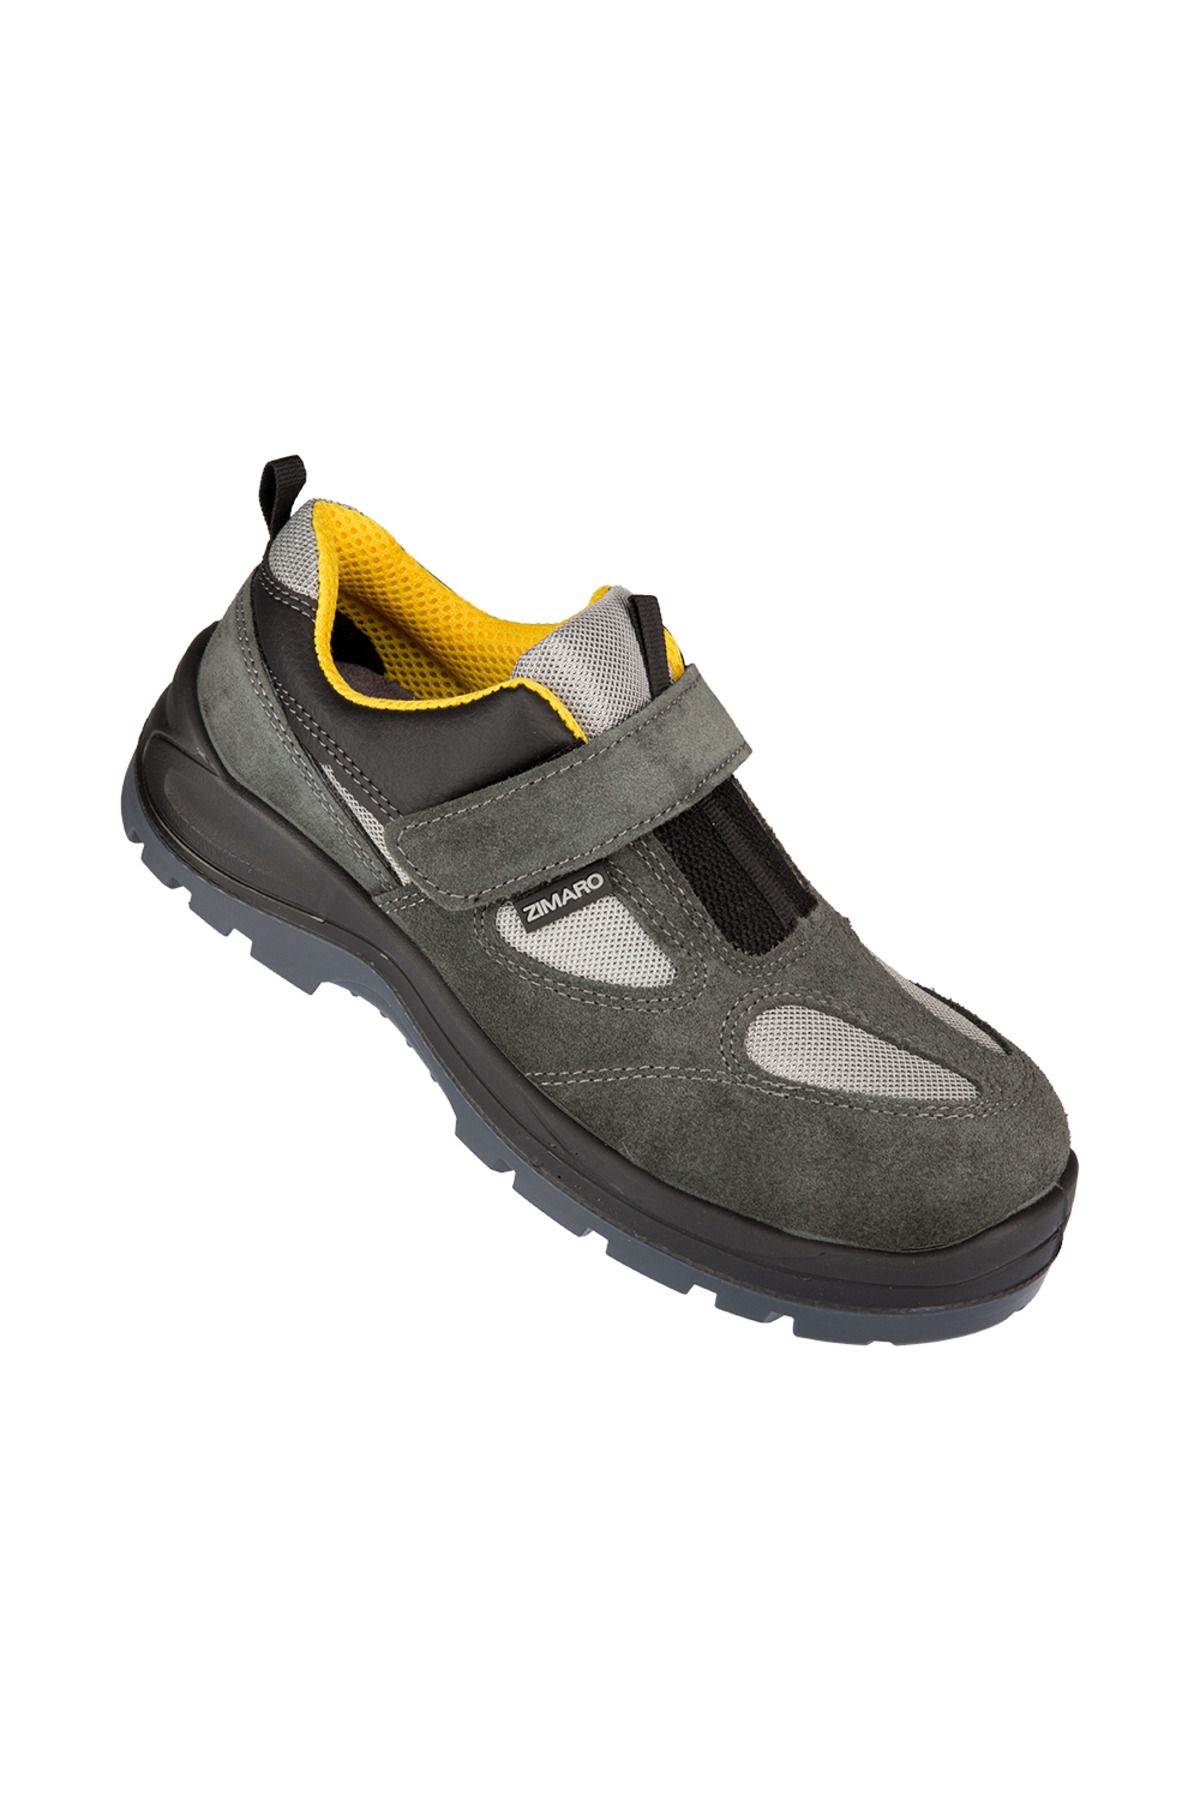 Zimaro Iş Güvenliği Ayakkabısı Z1.0 S1p (çelik Burun, Çelik Ara Taban, Kaymaz Taban)